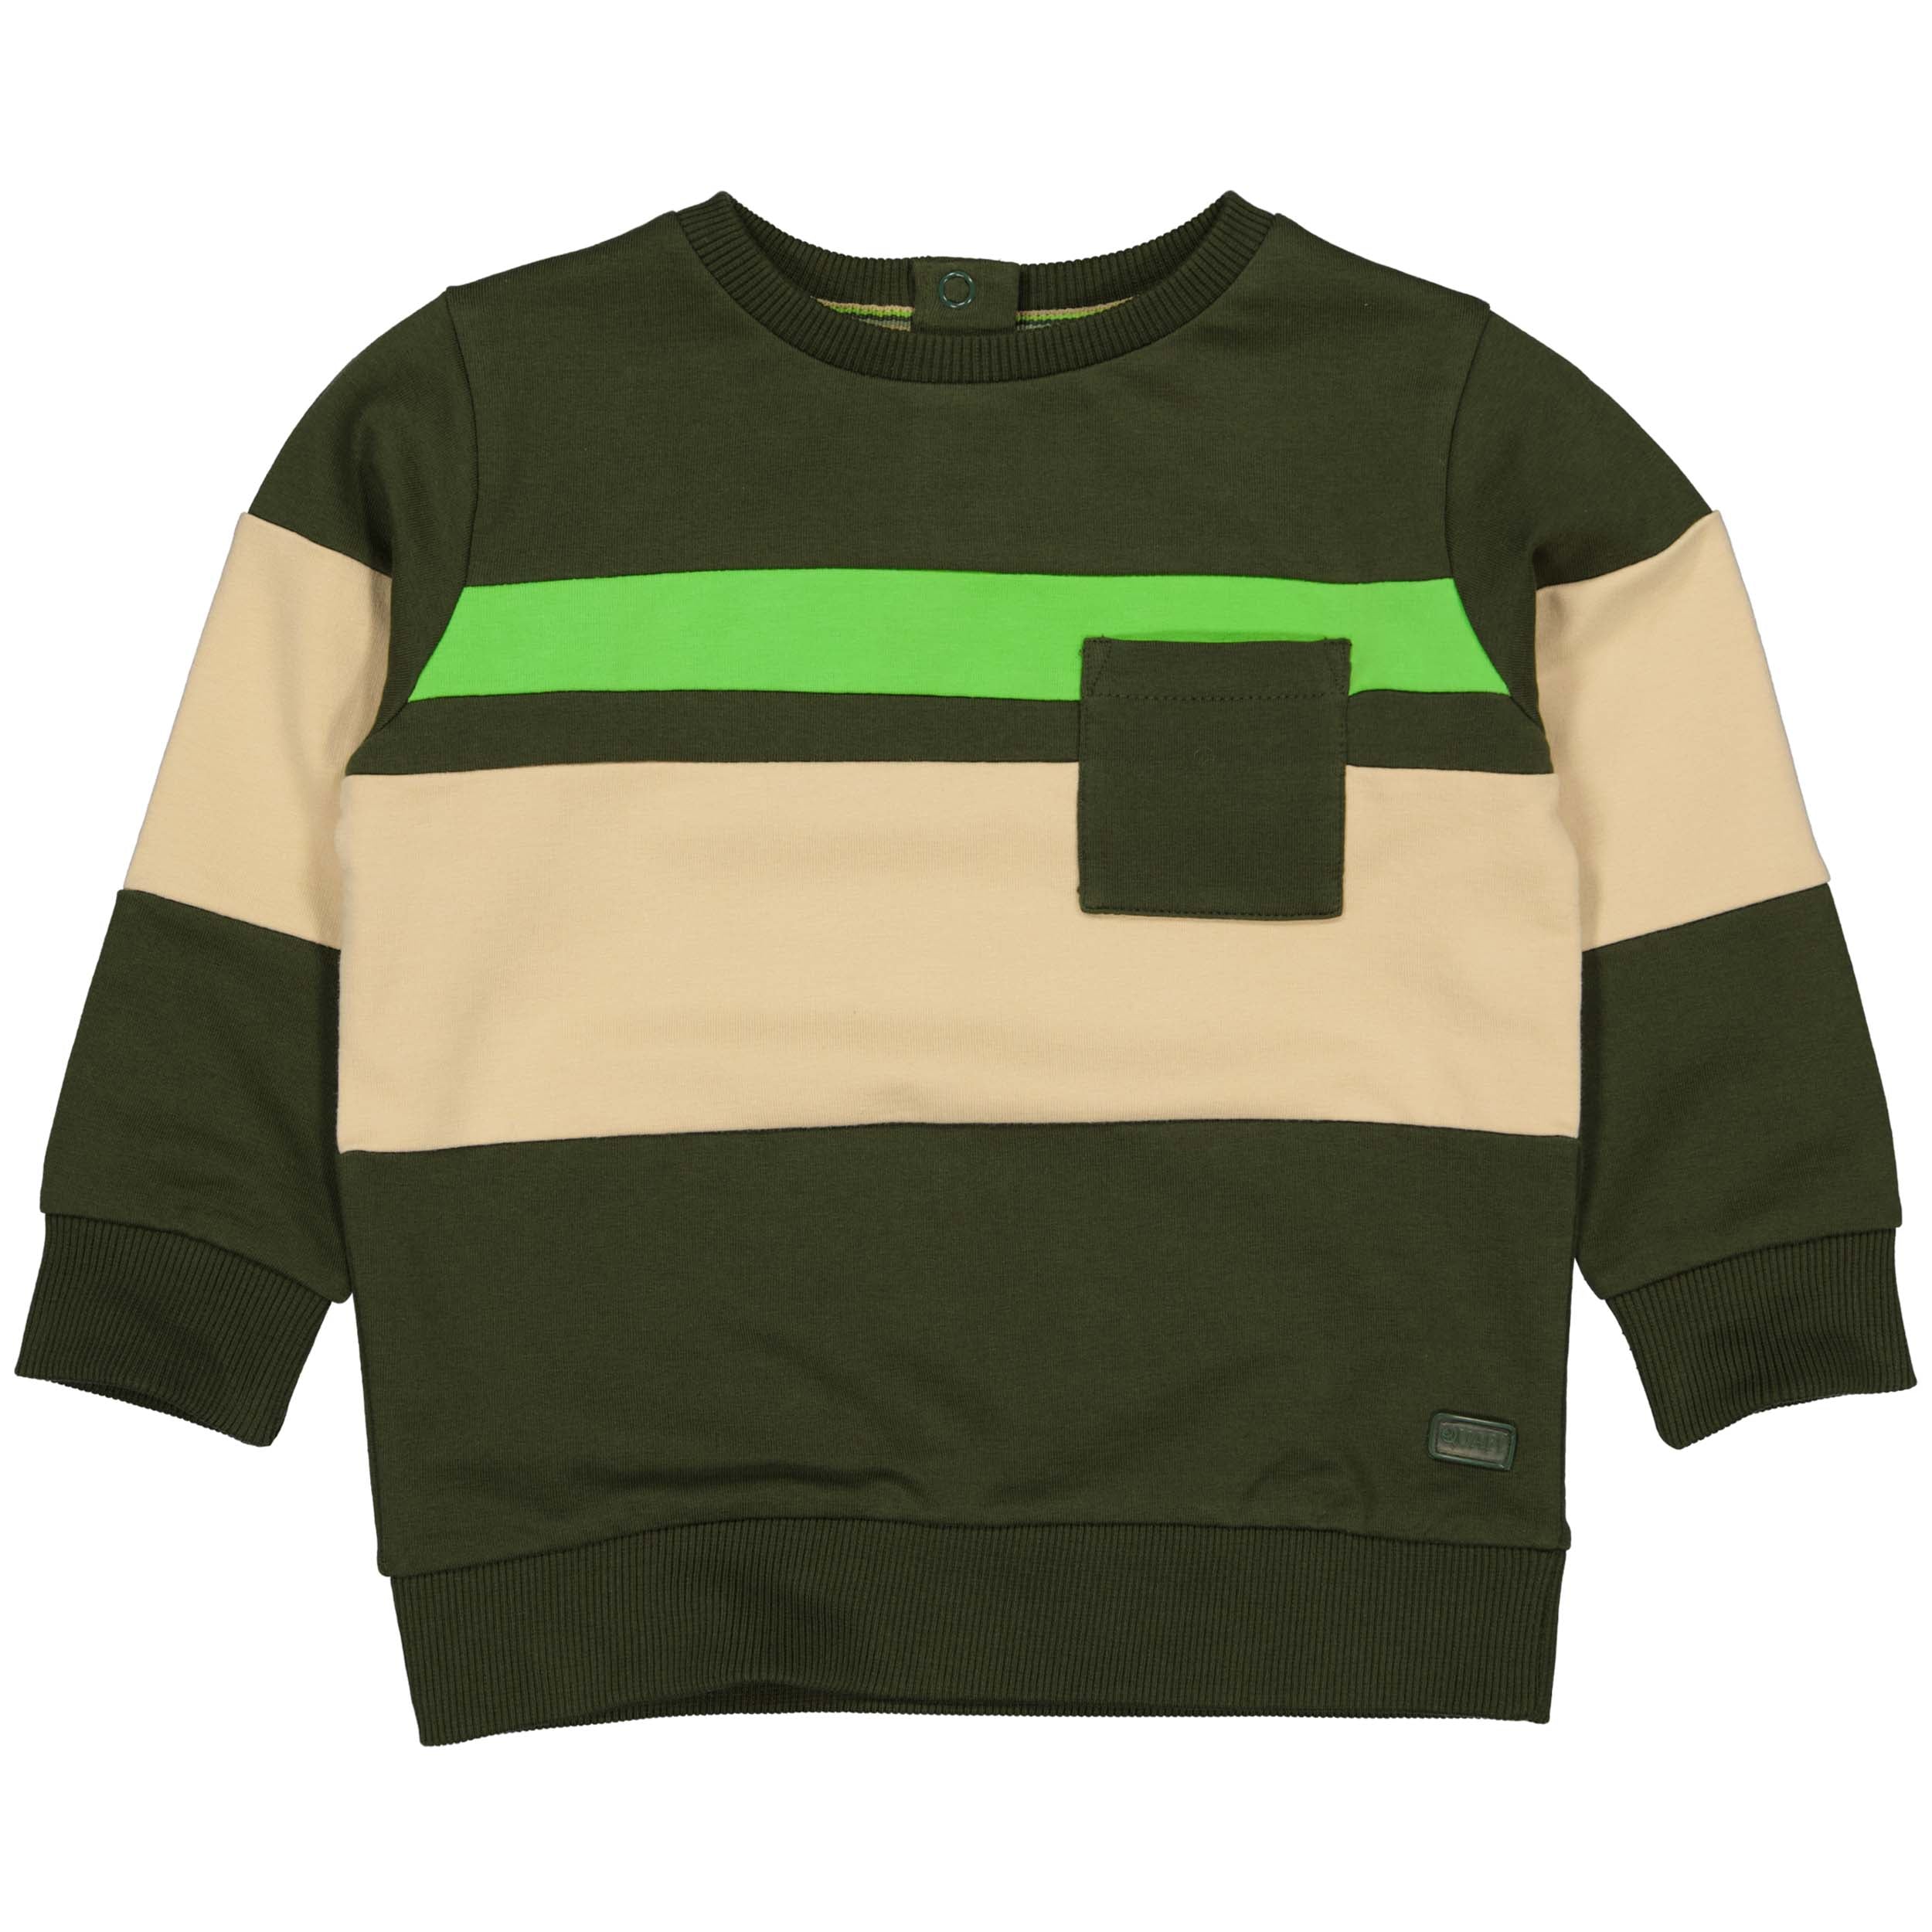 Jongens Sweater SEPPW221 van Quapi in de kleur Green Wood in maat 86.